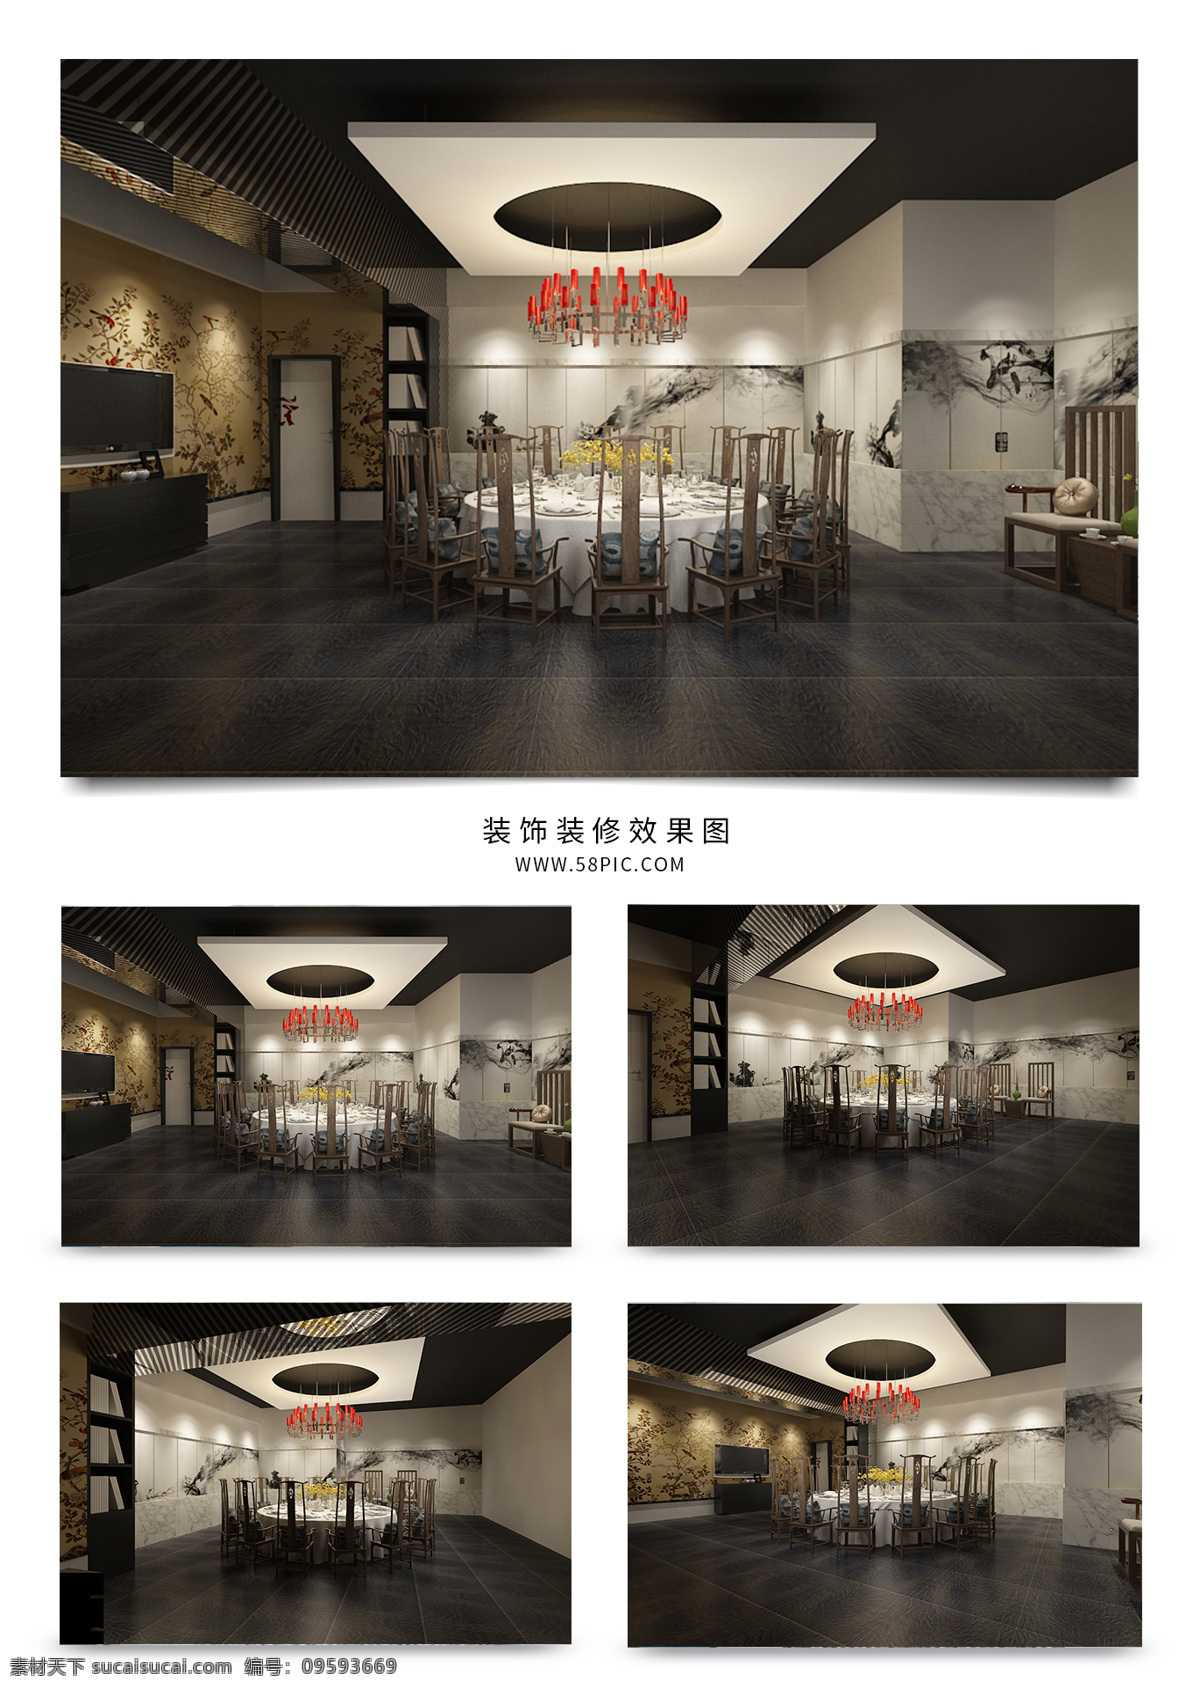 现代 中式 餐厅 效果图 模型 空间 餐桌 背景墙 电视 门 餐椅 稳重 地砖 吊顶 吊灯